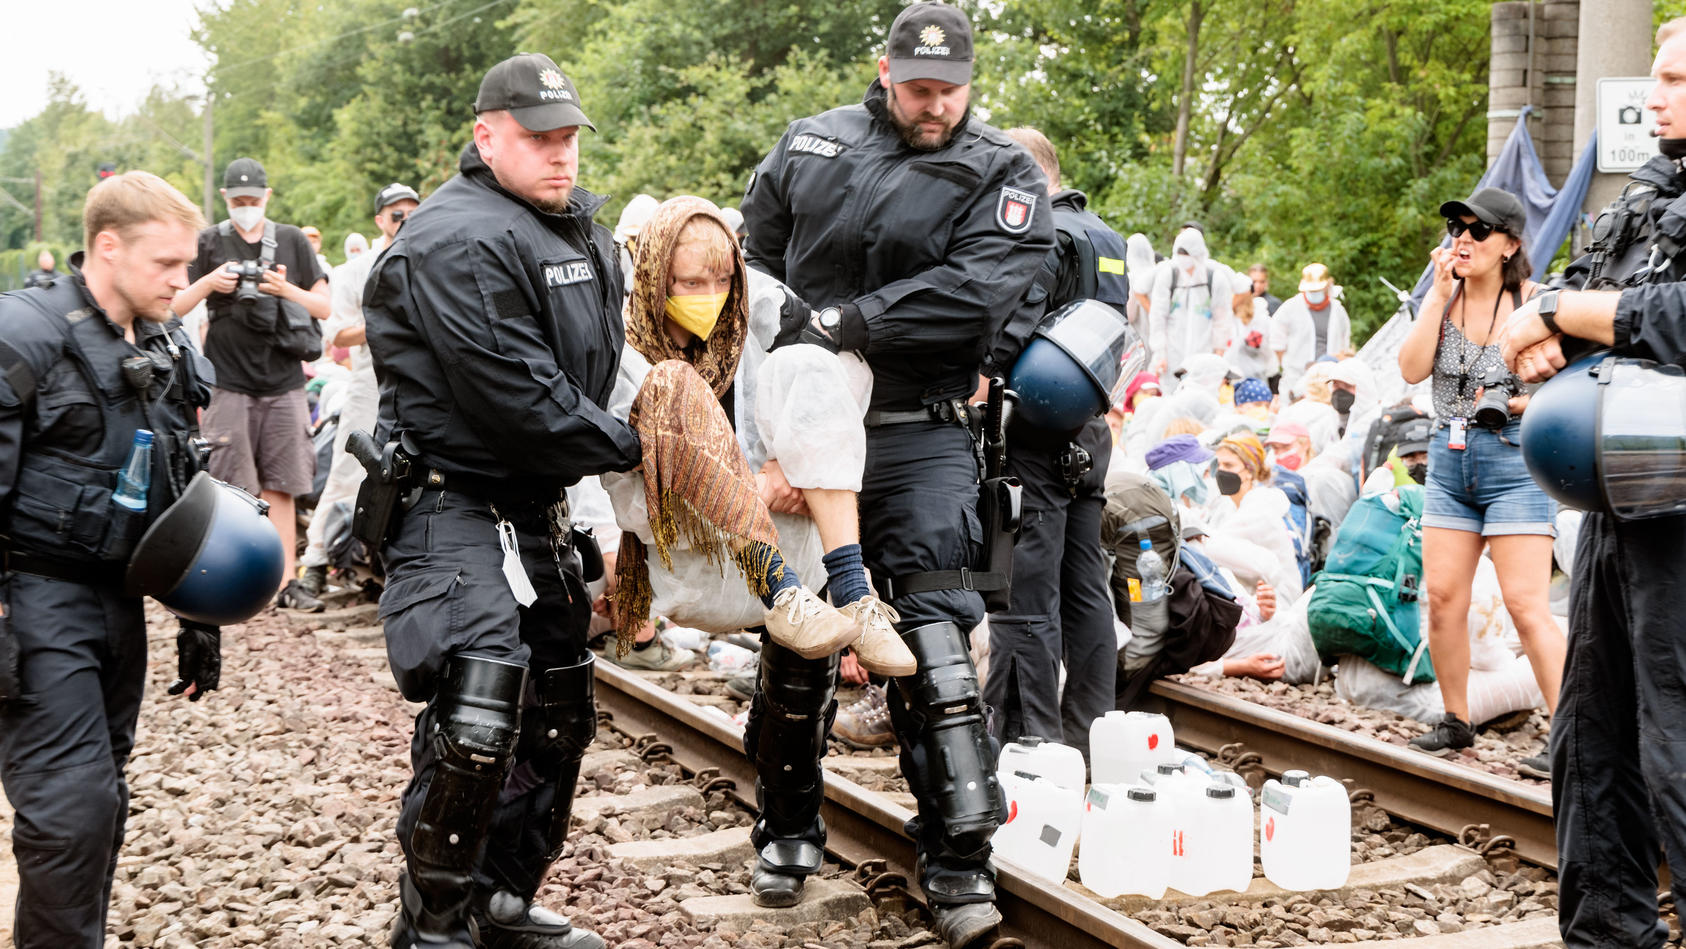 13.08.2022, Hamburg: Klima-Aktivisten die aus Protest Gleise im Hamburger Hafen besetzt haben, werden einzeln von Polizeibeamten von den Gleisen getragen. Klimaaktivisten haben in Hamburg an verschiedenen Stellen Blockaden initiiert, um für mehr Klim